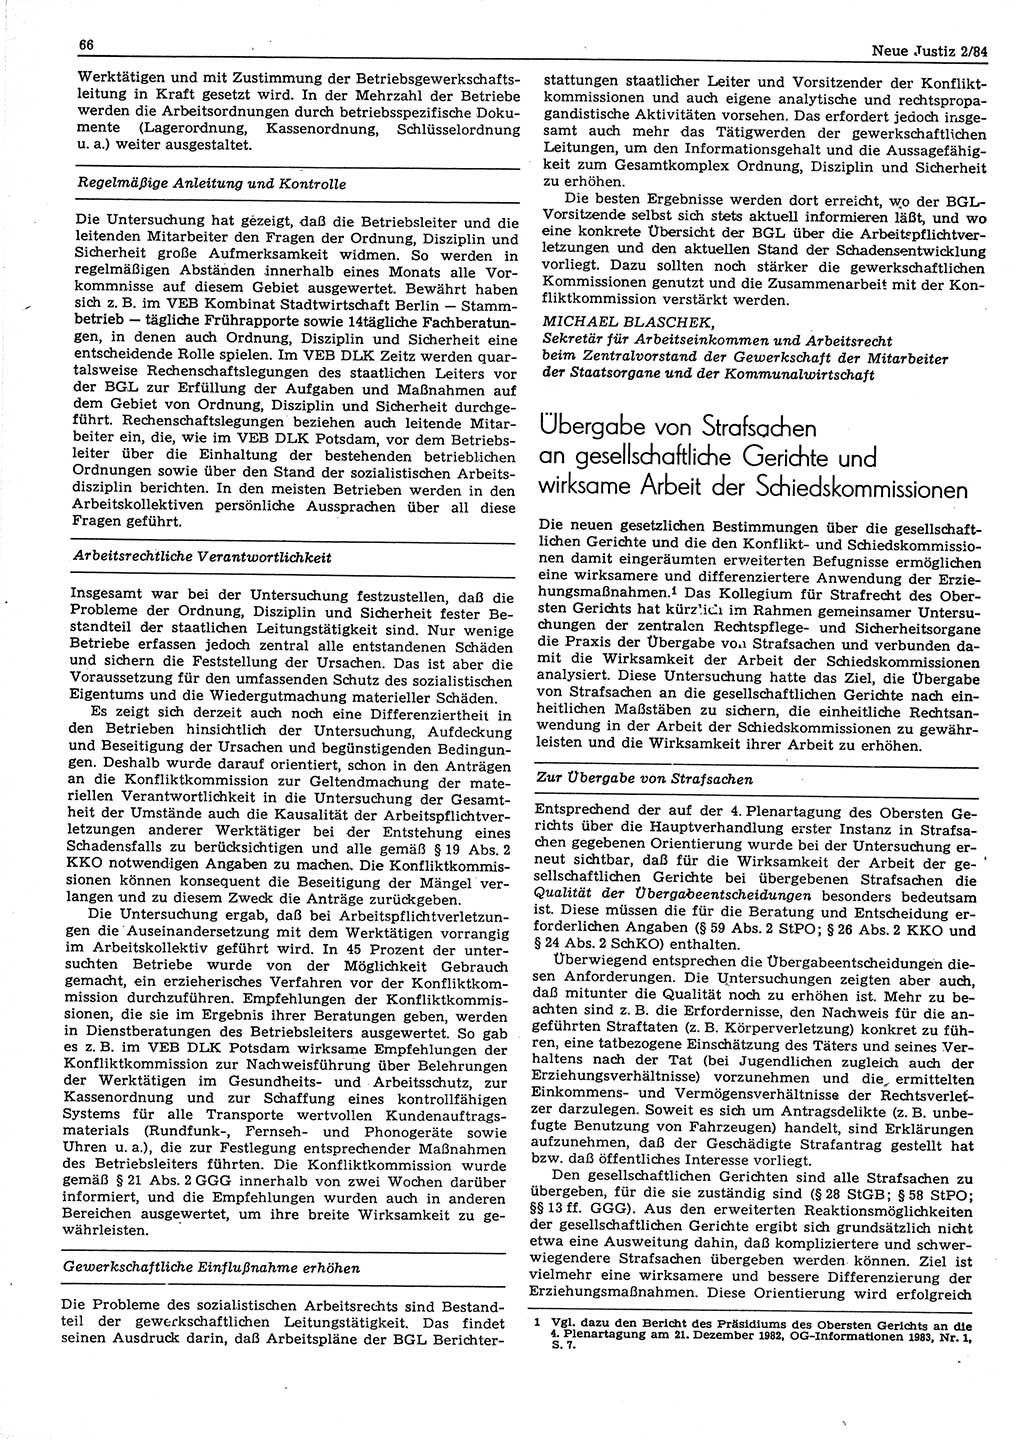 Neue Justiz (NJ), Zeitschrift für sozialistisches Recht und Gesetzlichkeit [Deutsche Demokratische Republik (DDR)], 38. Jahrgang 1984, Seite 66 (NJ DDR 1984, S. 66)